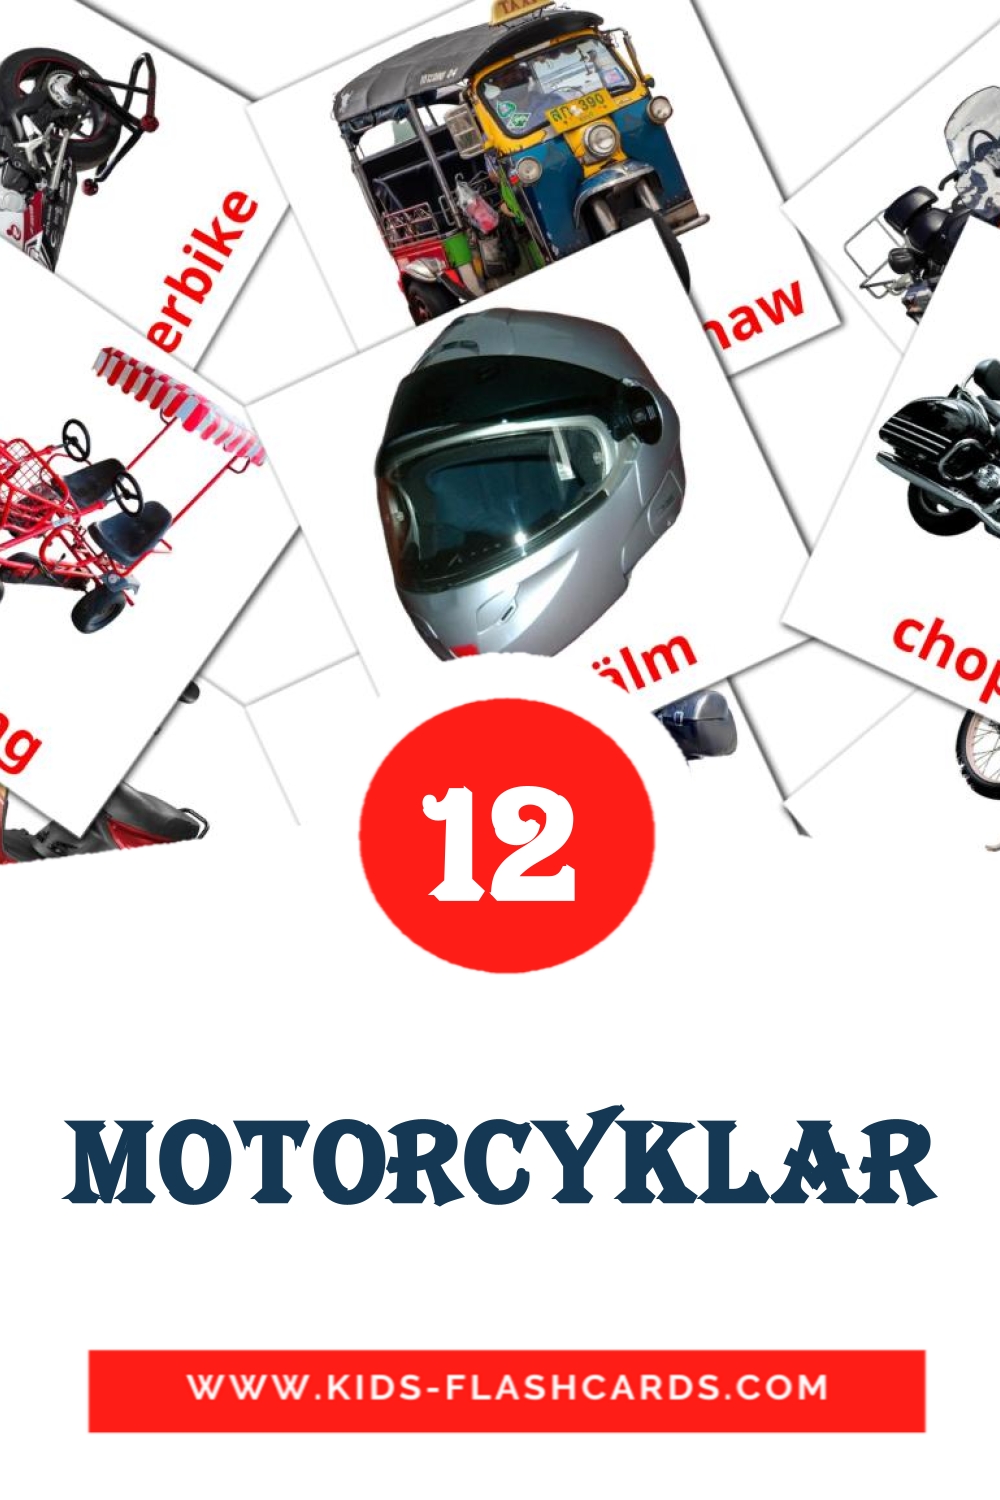 Motorcyklar на шведском для Детского Сада (12 карточек)